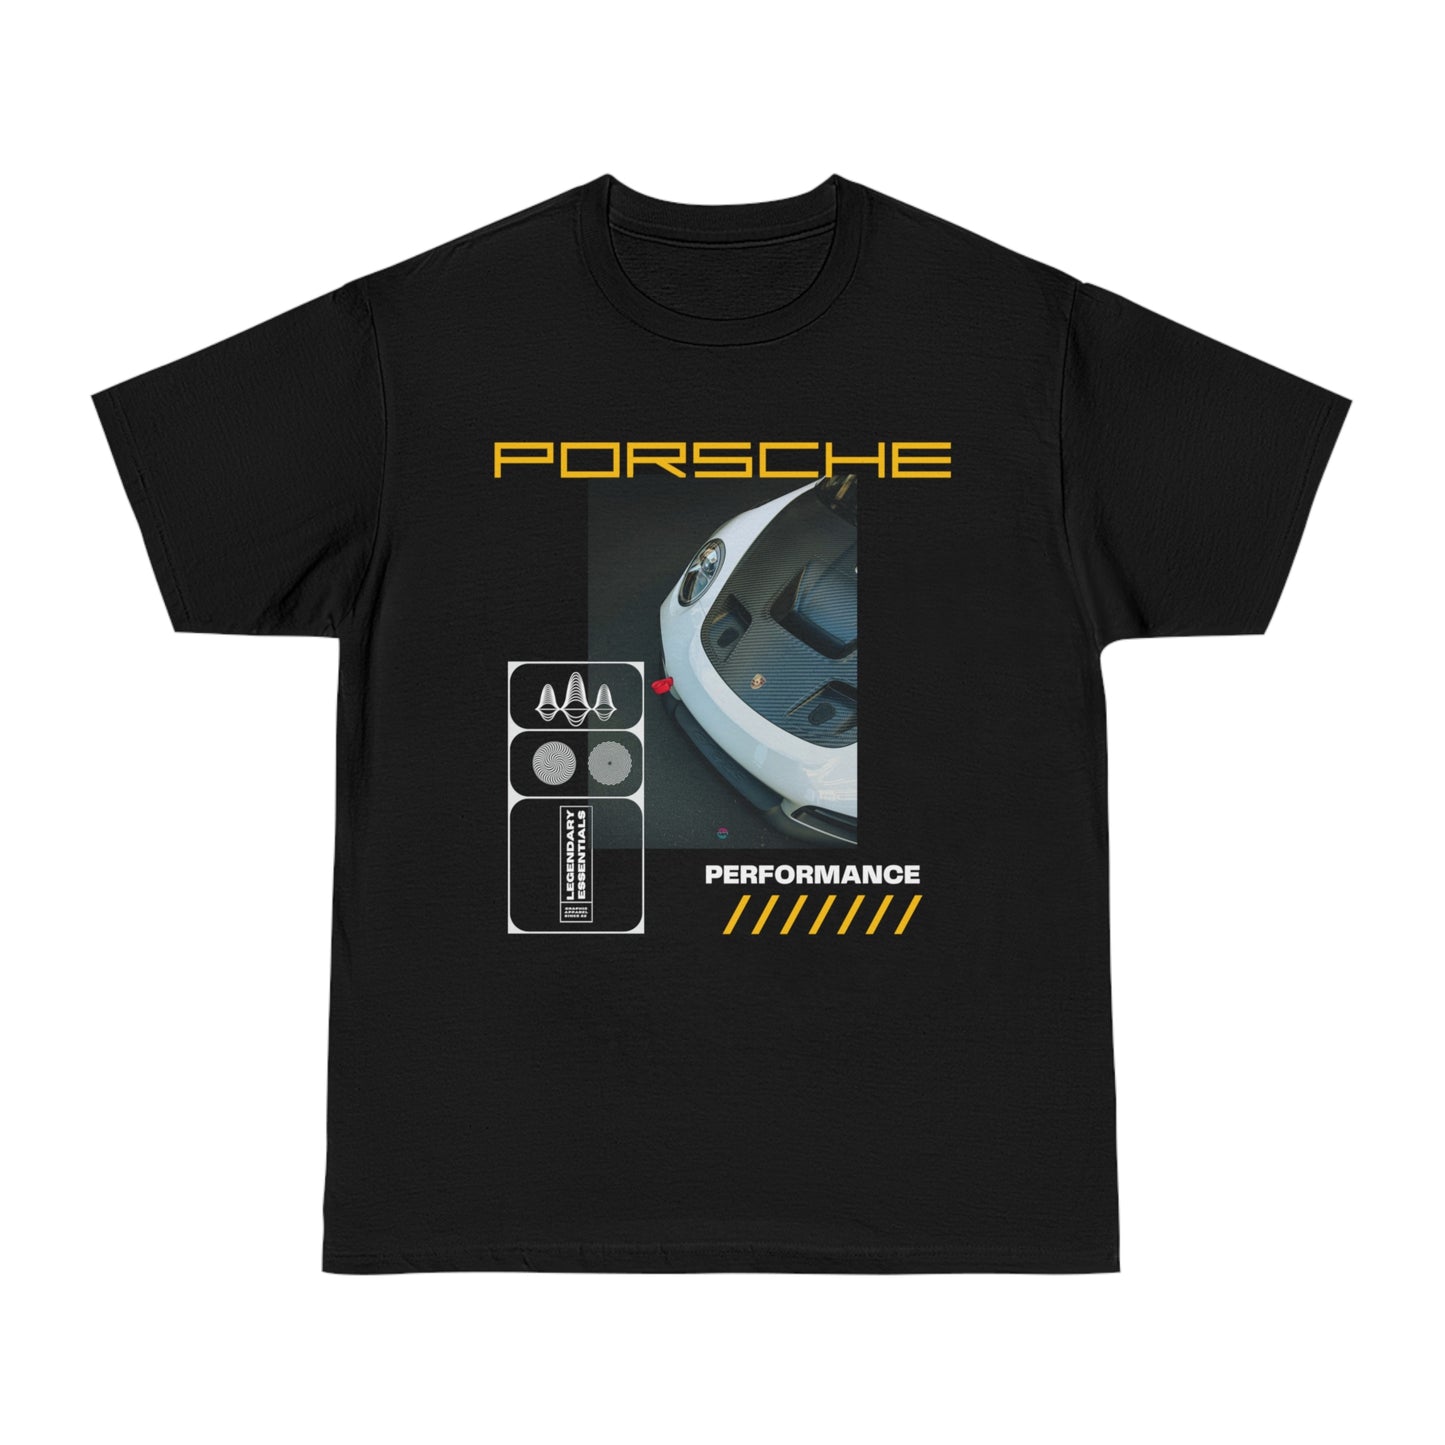 Porsche Performance T-shirt